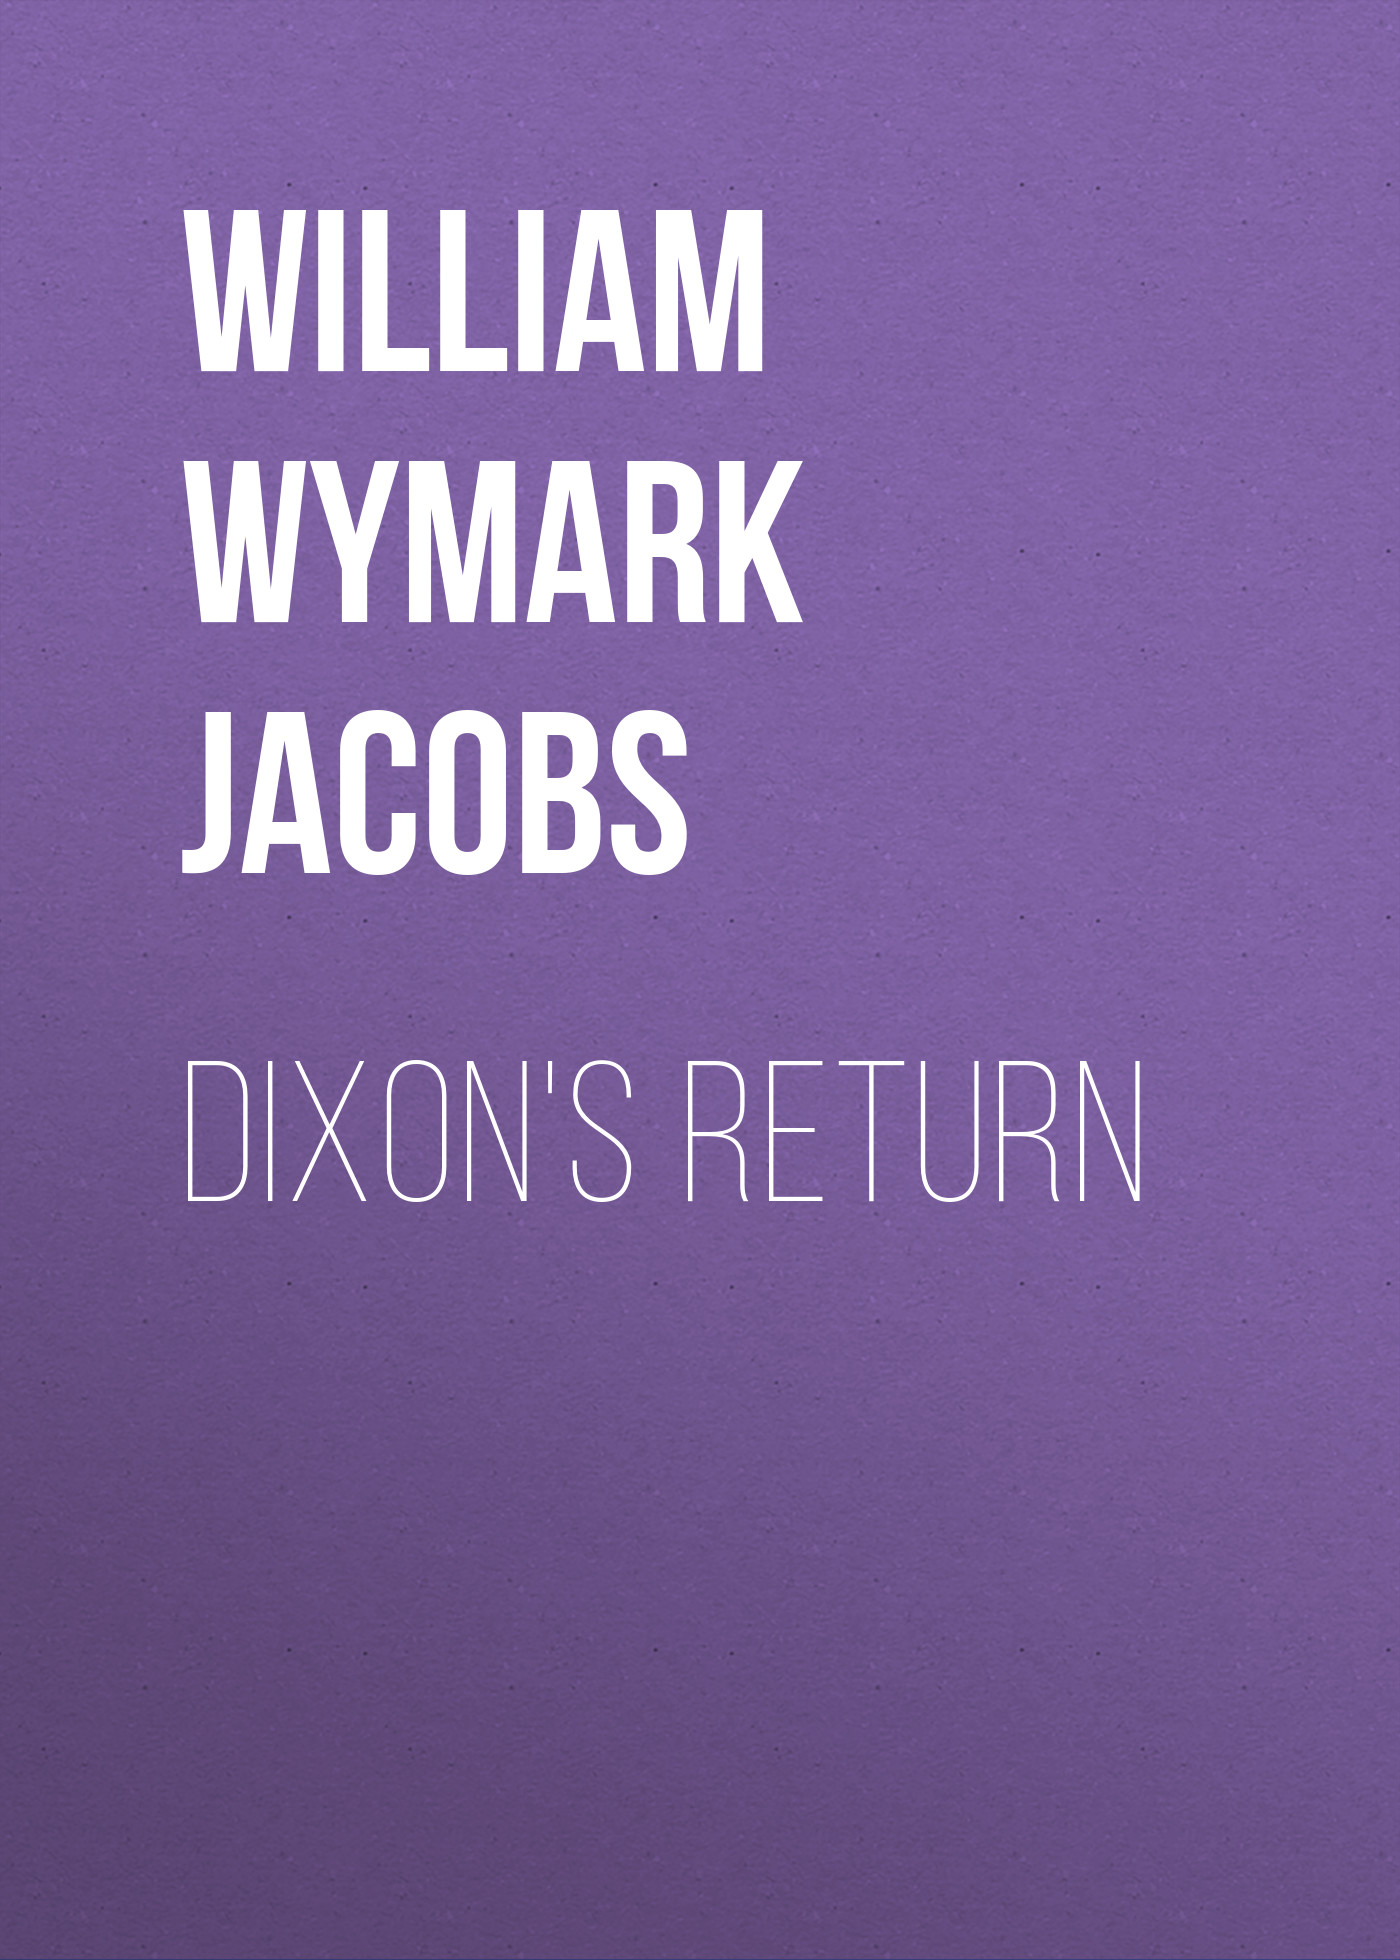 Книга Dixon's Return из серии , созданная William Wymark Jacobs, может относится к жанру Зарубежный юмор, Зарубежная старинная литература, Зарубежная классика. Стоимость электронной книги Dixon's Return с идентификатором 34844110 составляет 0 руб.